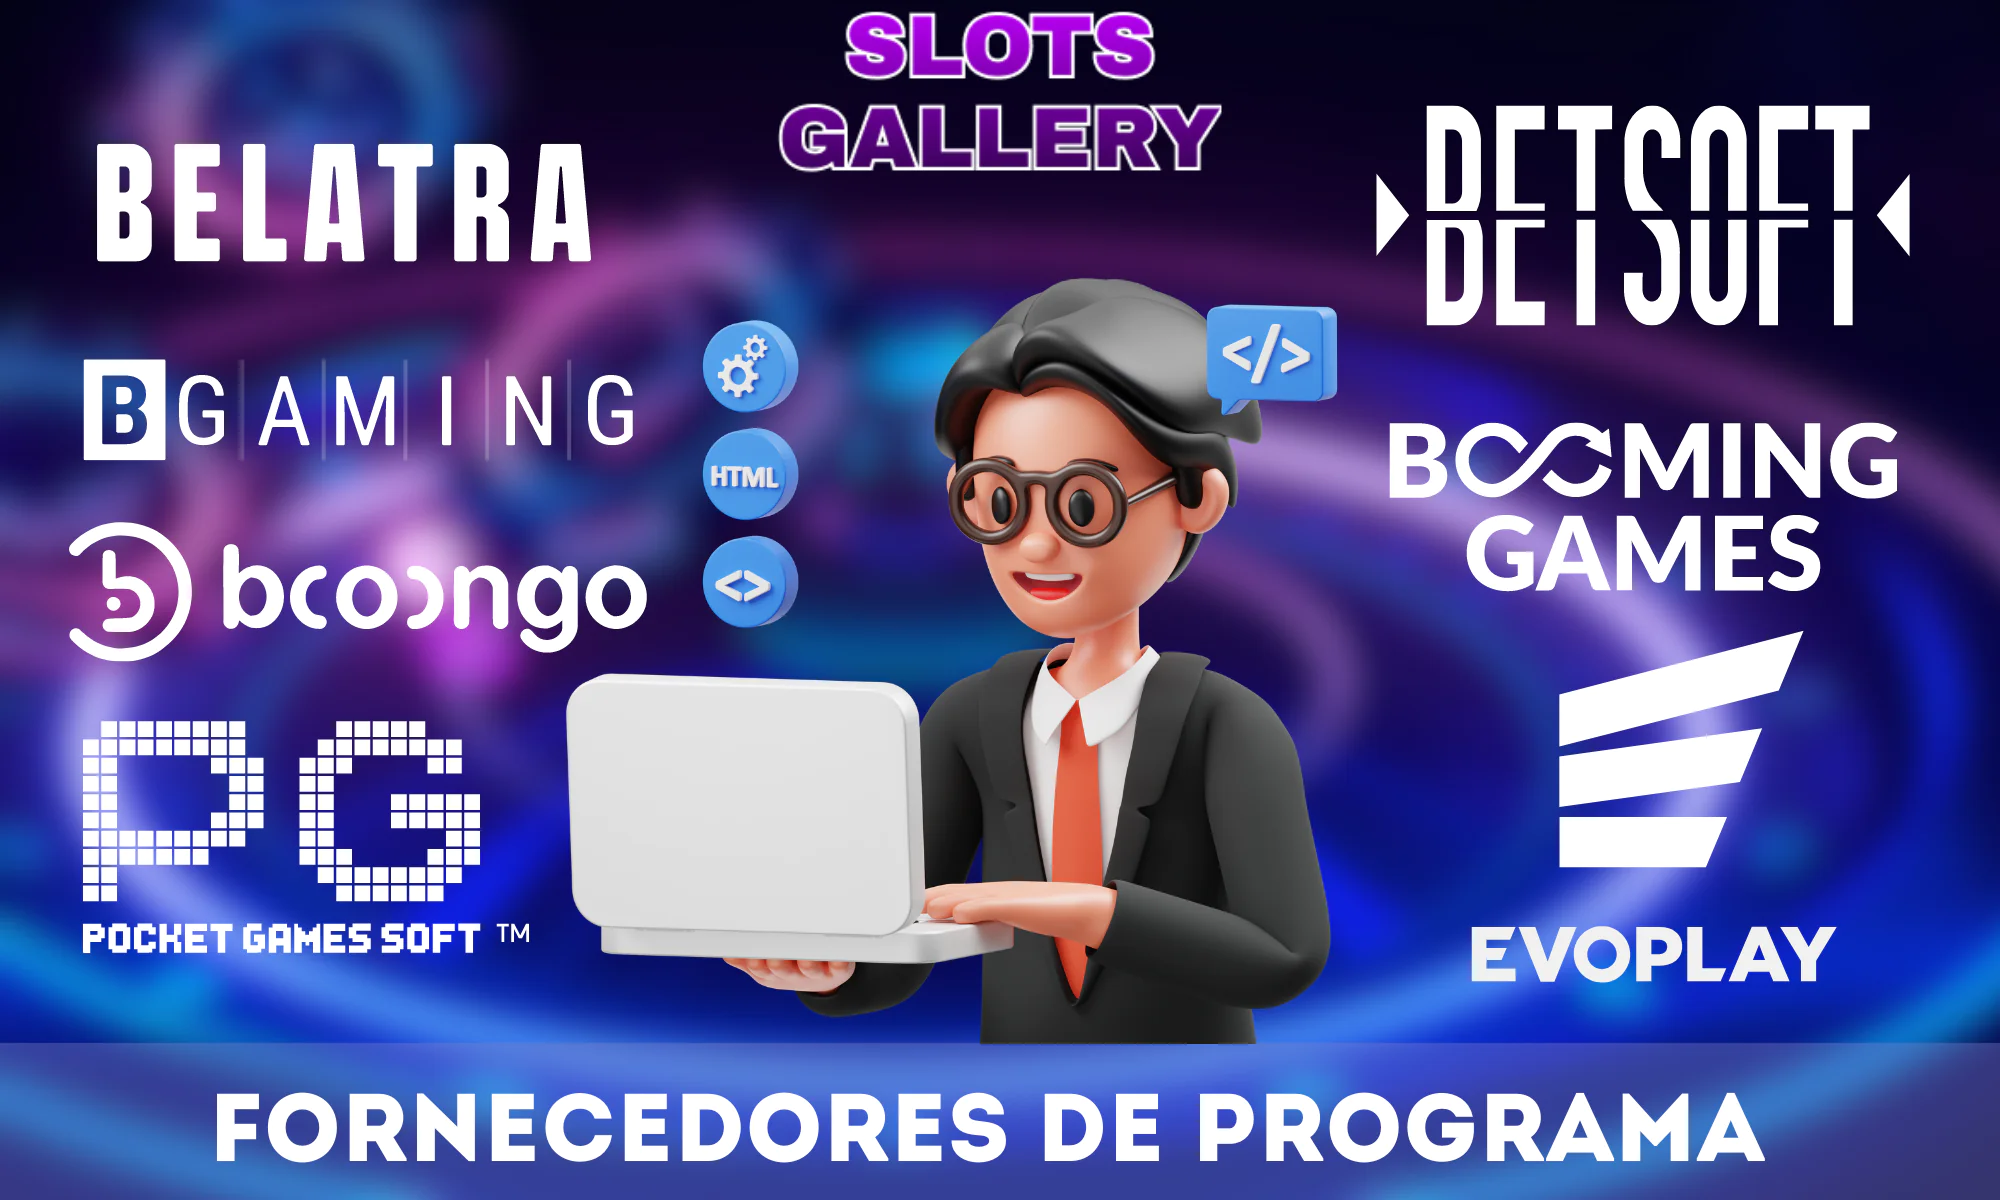 Slots Gallery Casino em parceria com mais de 50 fornecedores de jogos diferentes